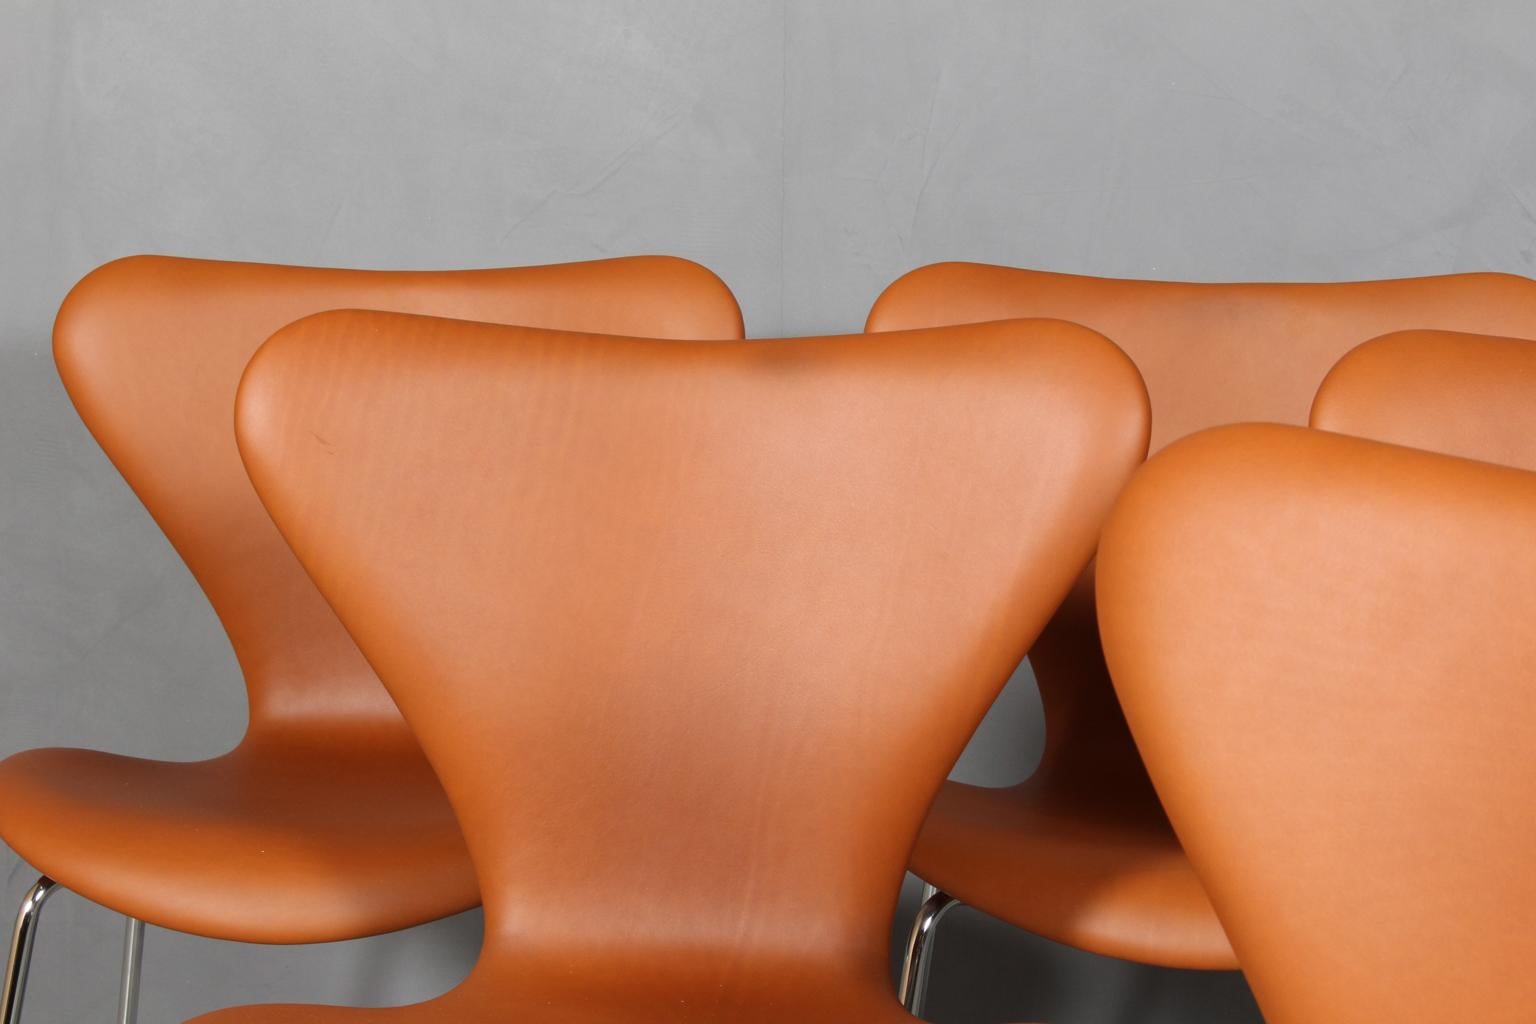 Scandinavian Modern Arne Jacobsen Dining Chair For Sale